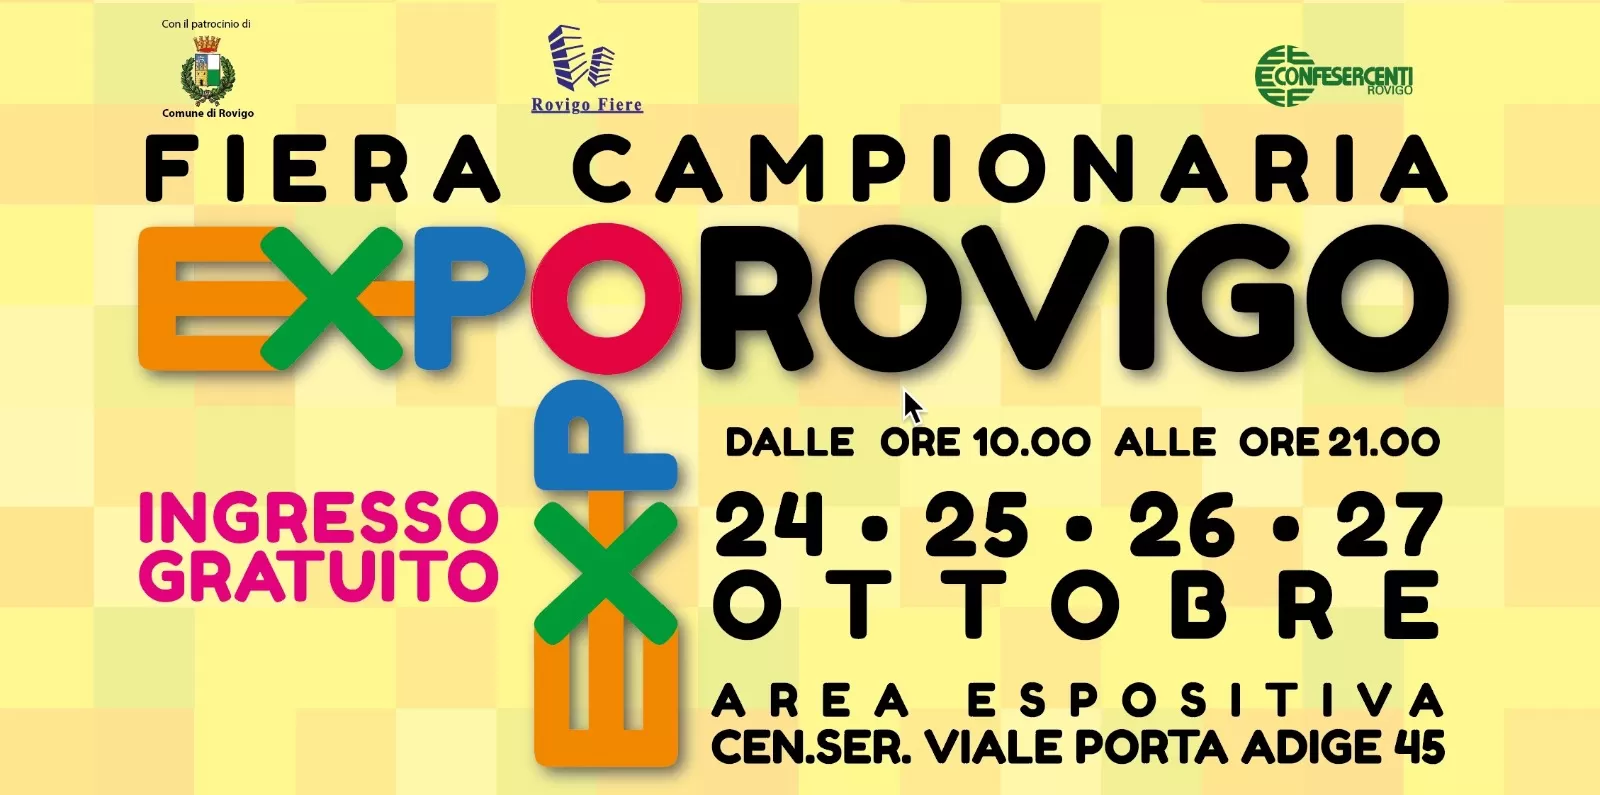 Fiera Campionaria EXPO ROVIGO – 22 / 23 / 24 Ottobre 2021